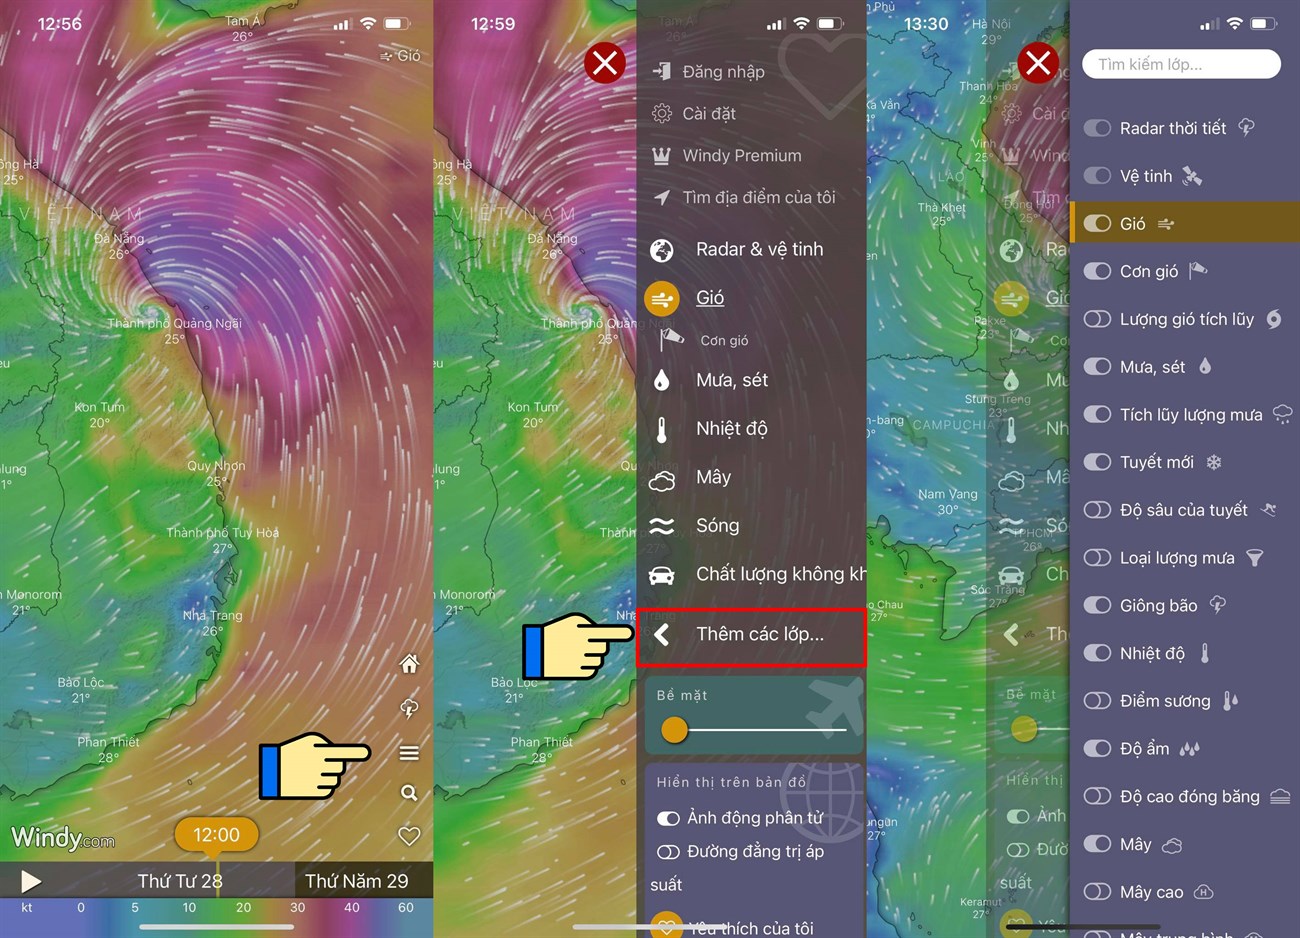 Cách xem bản đồ dự báo thời tiết, bão lũ, thiên tai Việt Nam trực tiếp qua vệ tinh > Kích hoạt các lớp thông tin khác